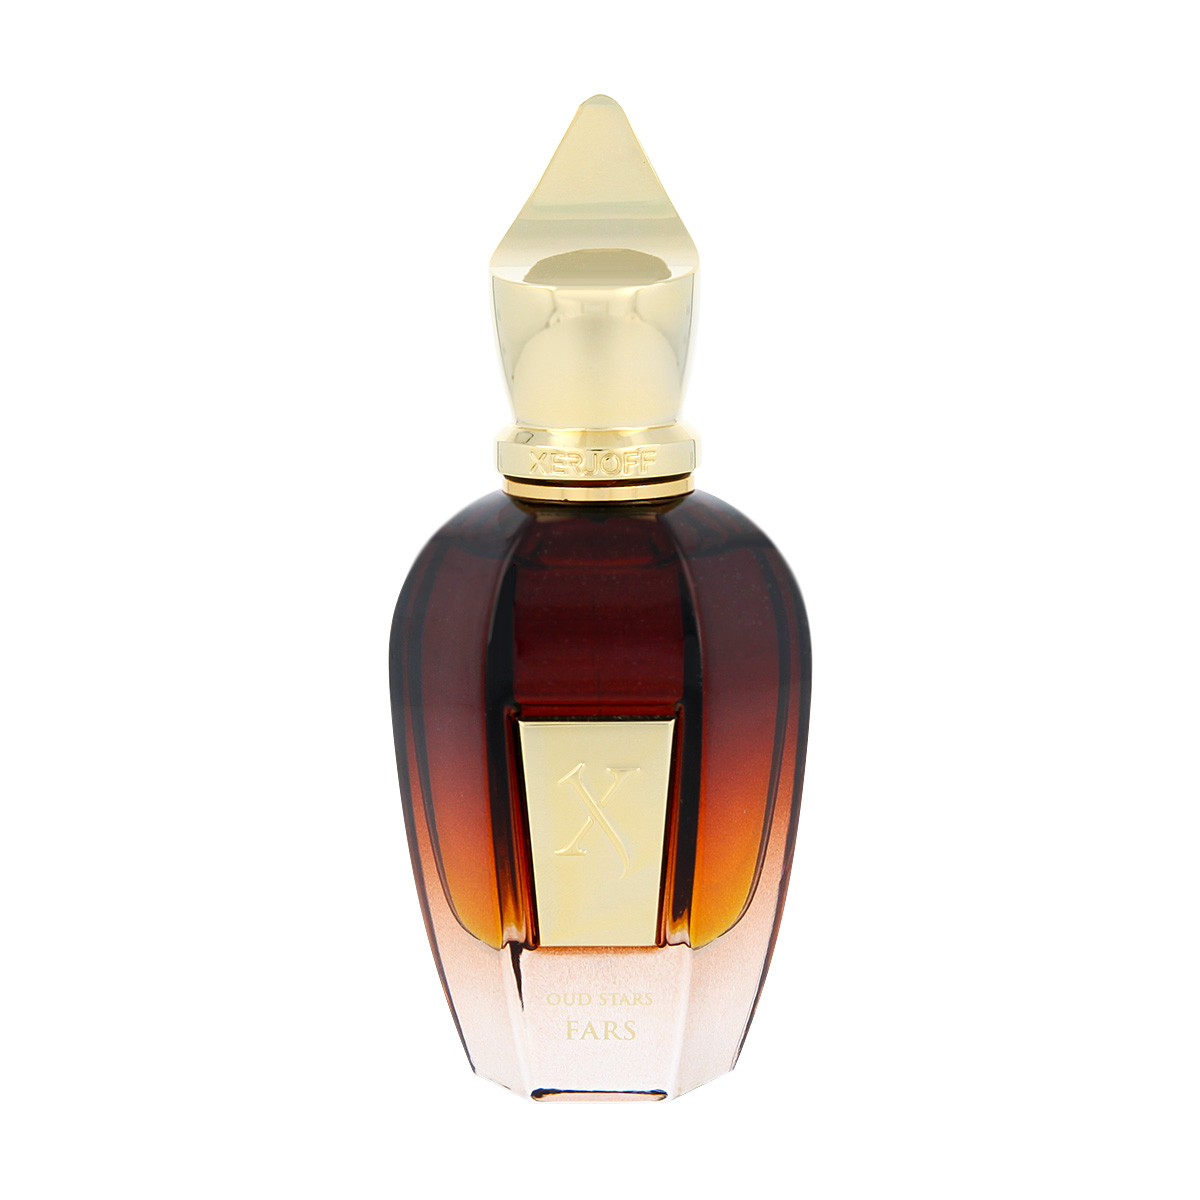 Xerjoff Oud Stars Fars 10 ml NIŠINIAI kvepalų mėginukas (atomaizeris) Unisex Parfum